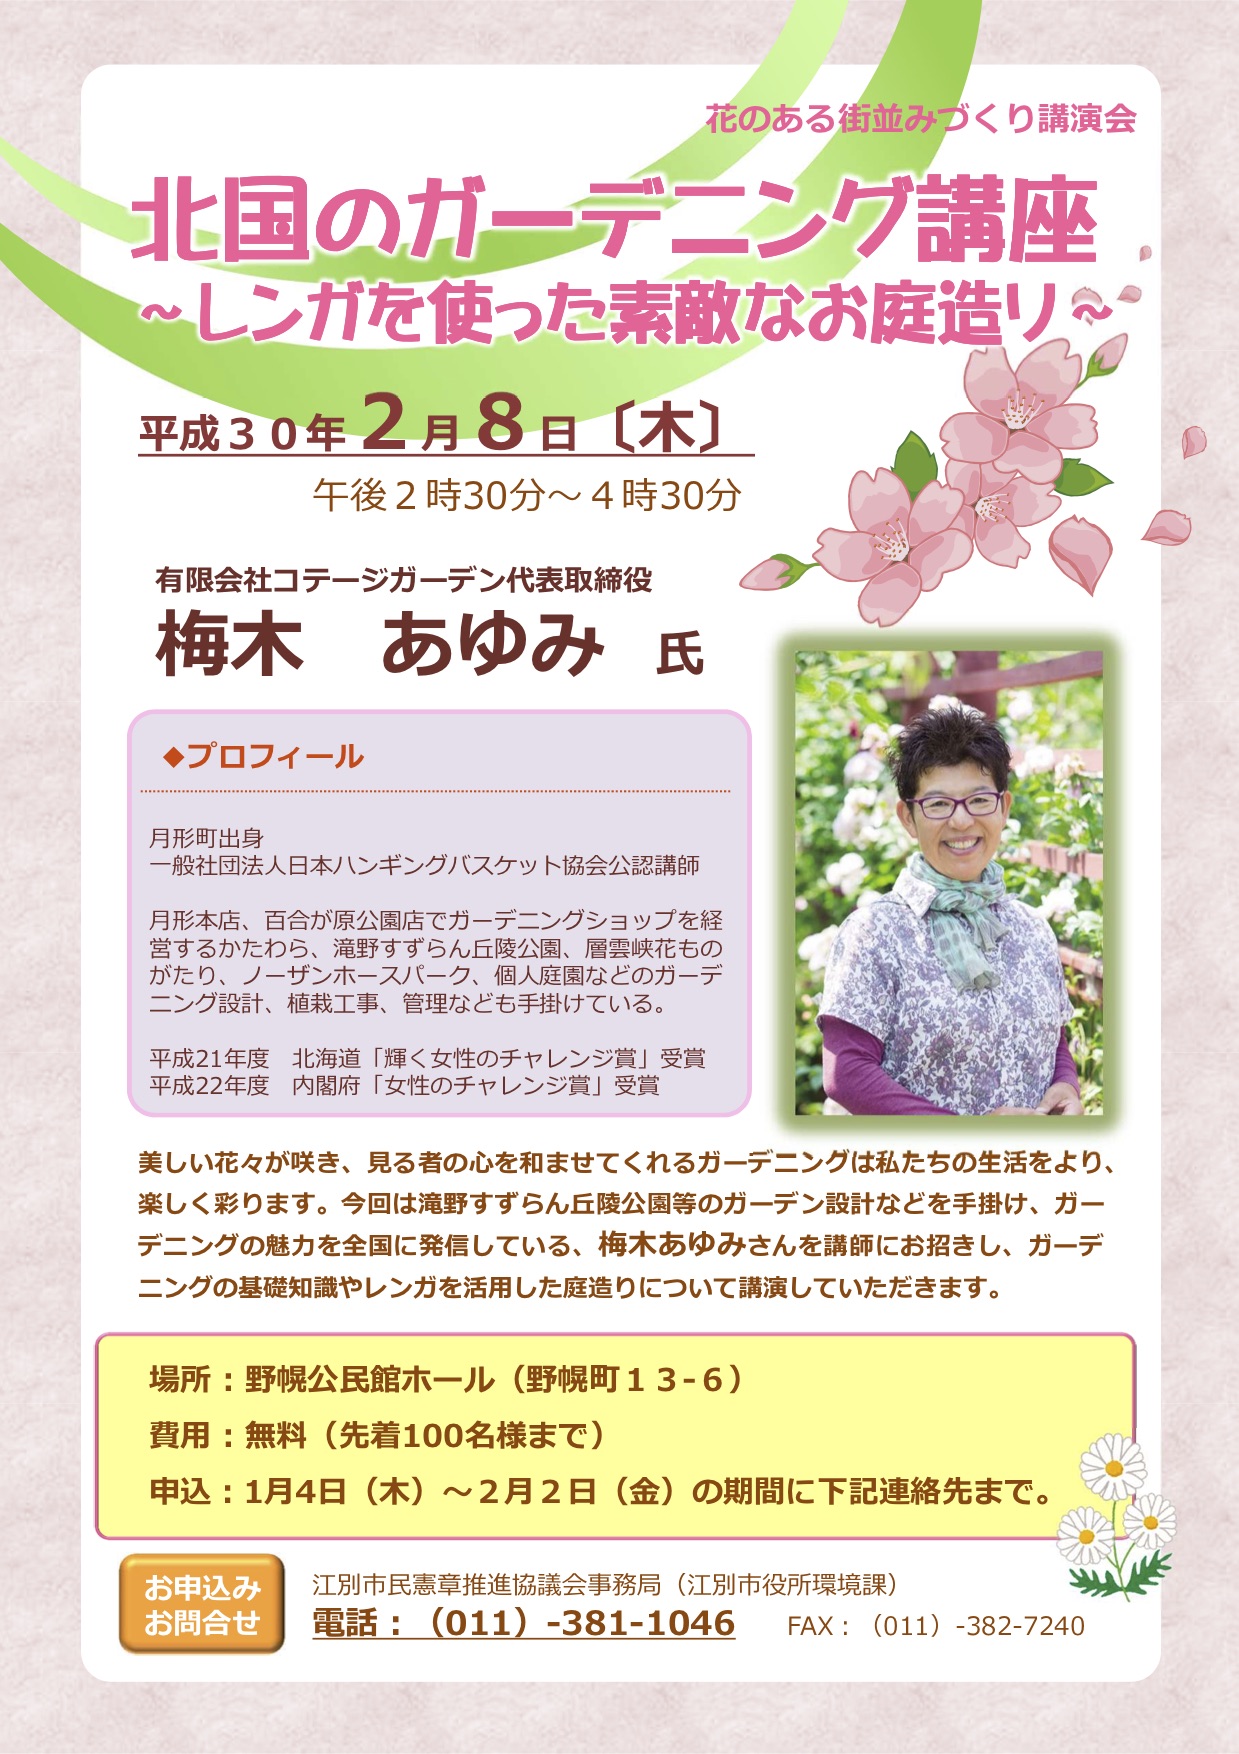 れんがを使ったガーデニング講座に梅木あゆみさんが登壇 れんがのまち 江別で開催 江別市民ブロガーズ